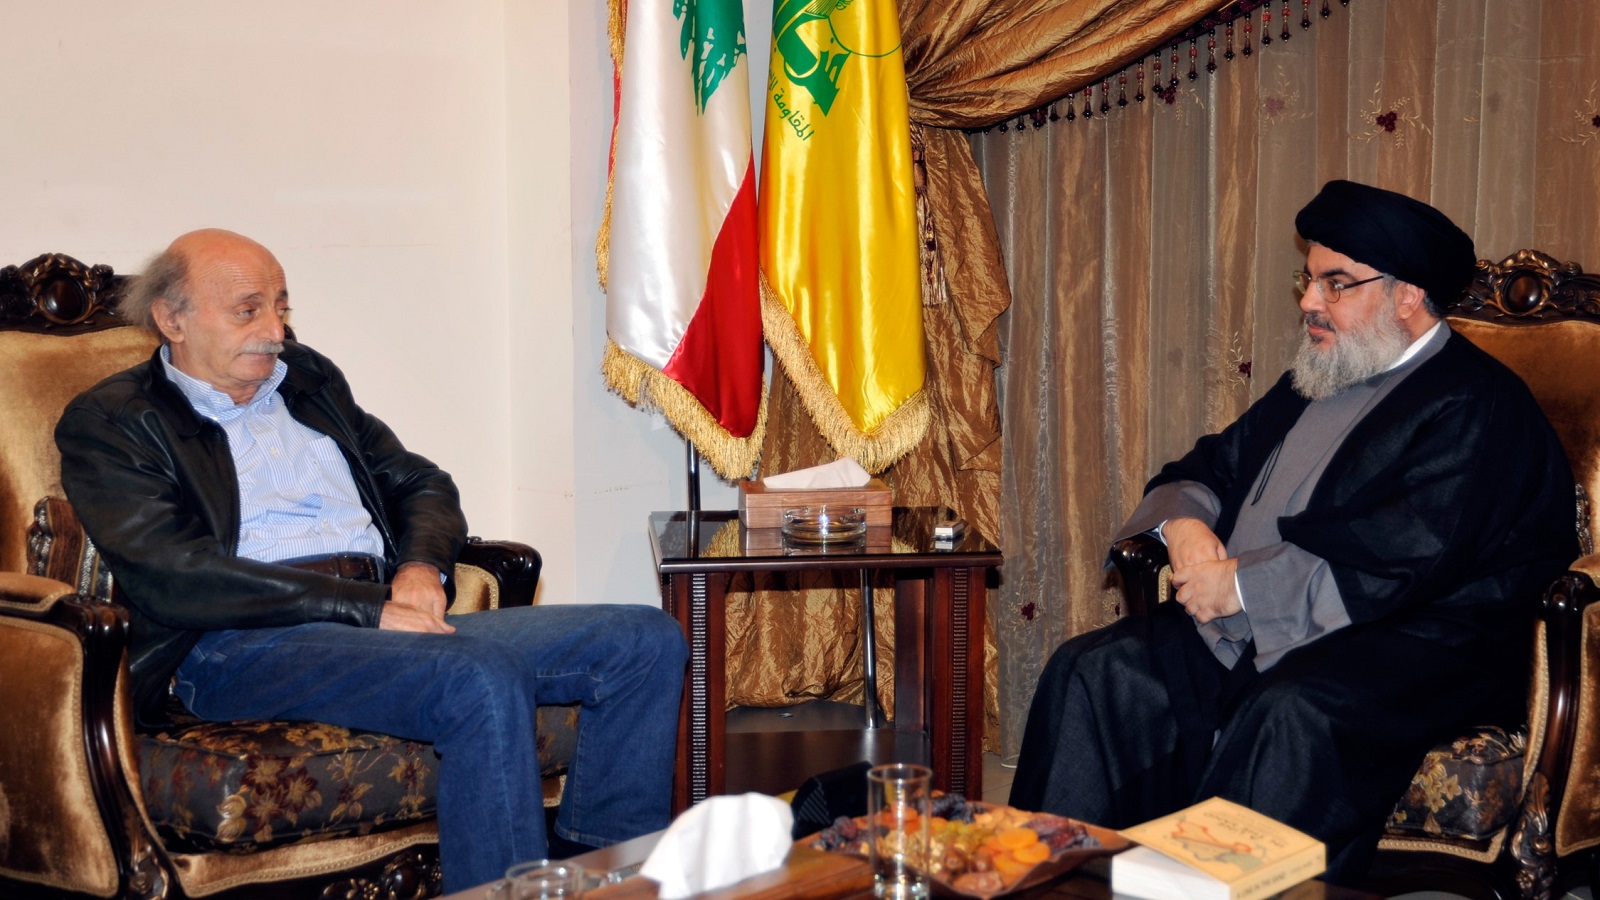 حزب الله يعايد "الاشتراكي" وبرّي يجمعهما قريباً في دارته